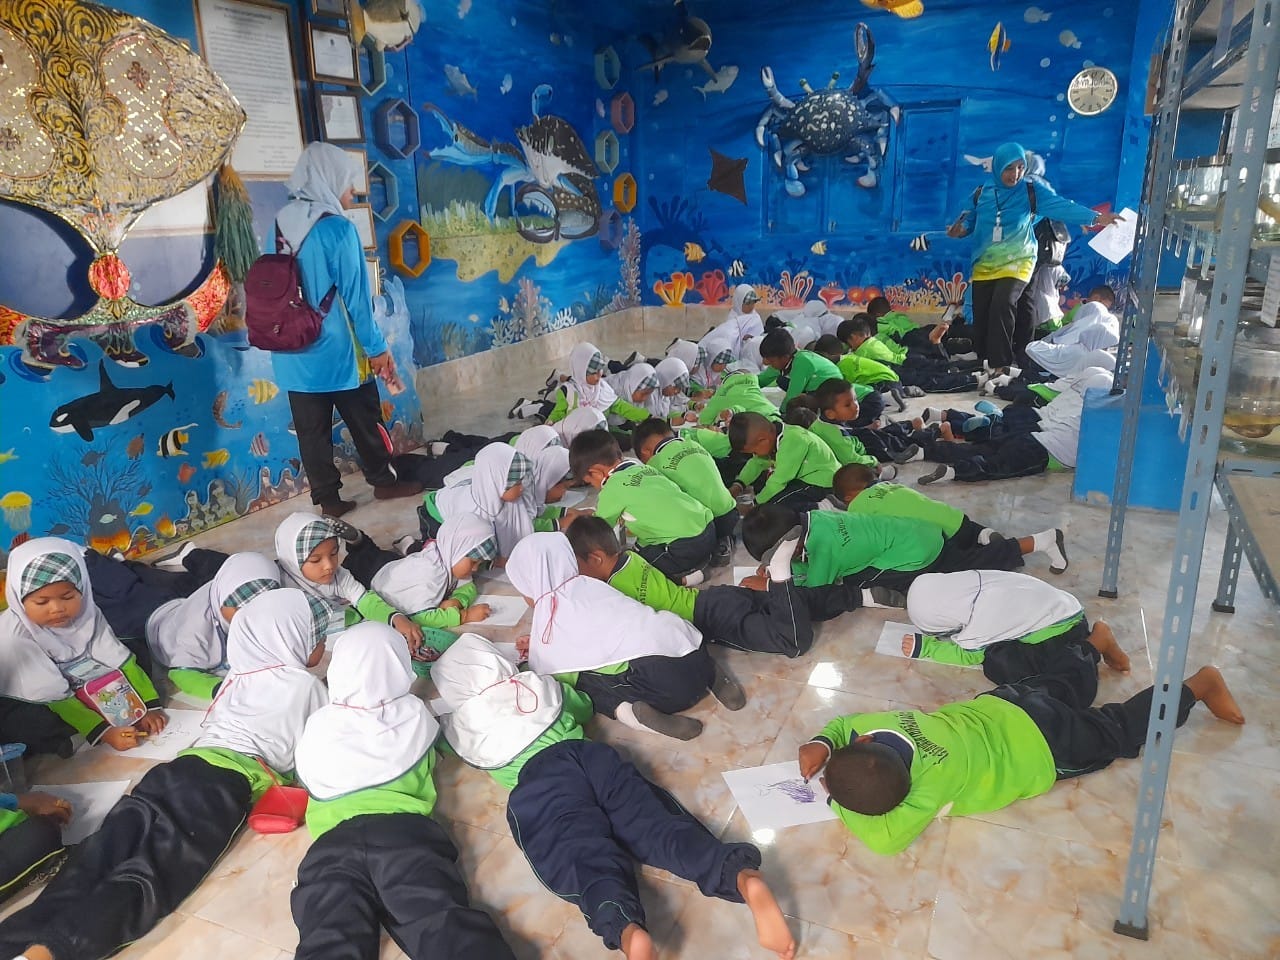 “โรงเรียนชาวเลปะนาเระ” จากชายหาดสู่ศูนย์กลางการเรียนรู้และท่องเที่ยว ปัตตานี